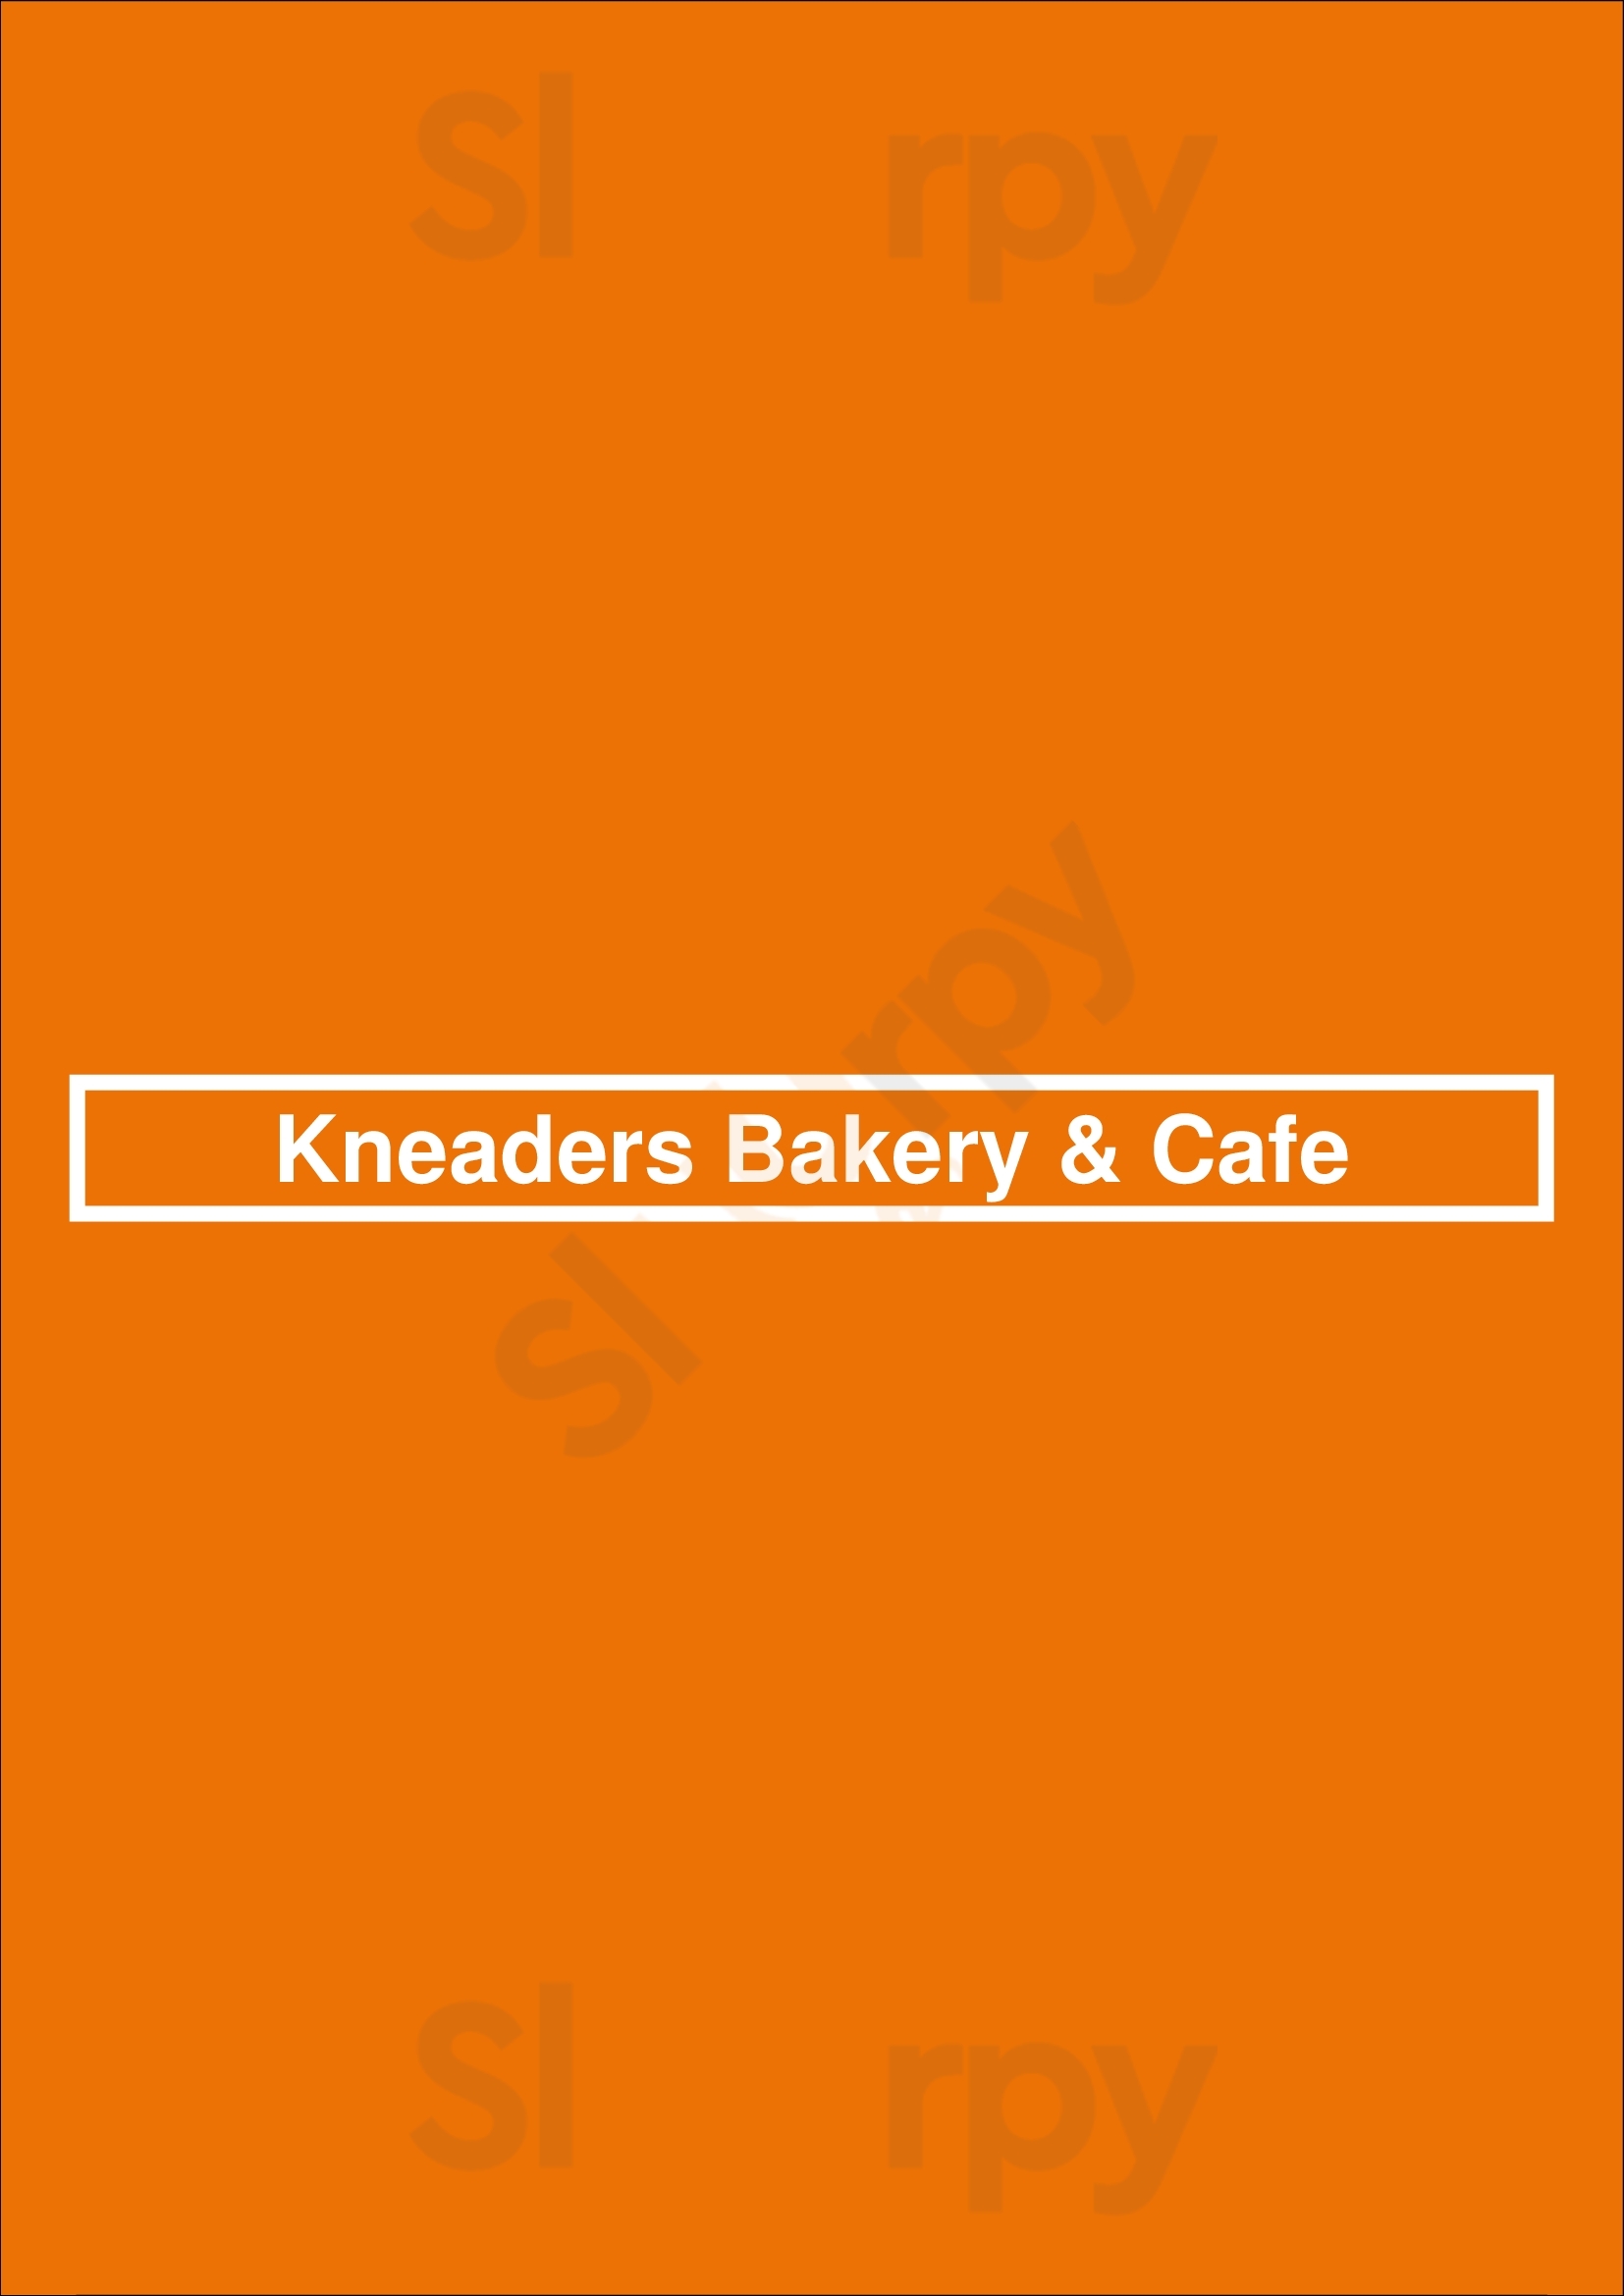 Kneaders Bakery & Cafe Glendale Menu - 1